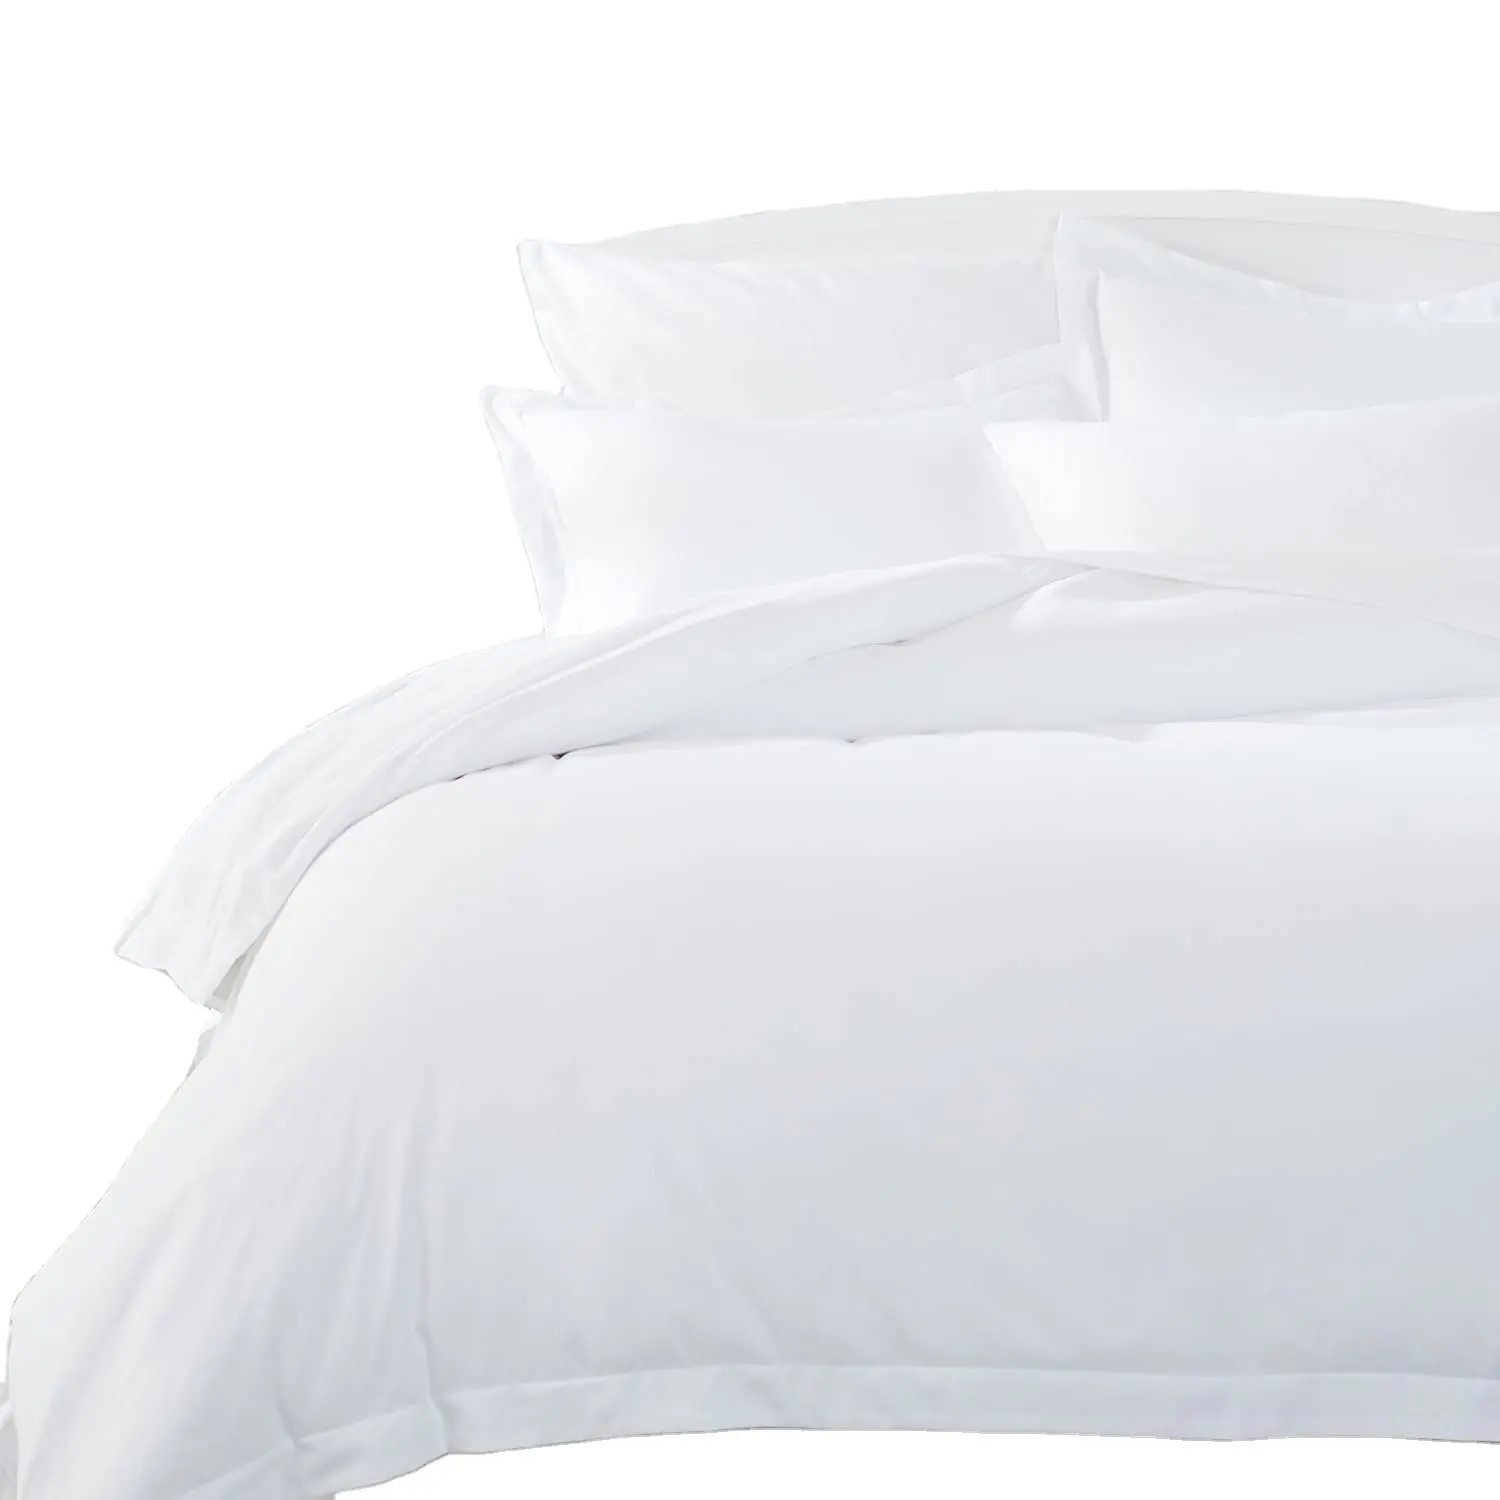 Parure de lit en lin, ensemble de literie de luxe, 300tc, 4 pièces, blanc, vente en gros, pour hôtel